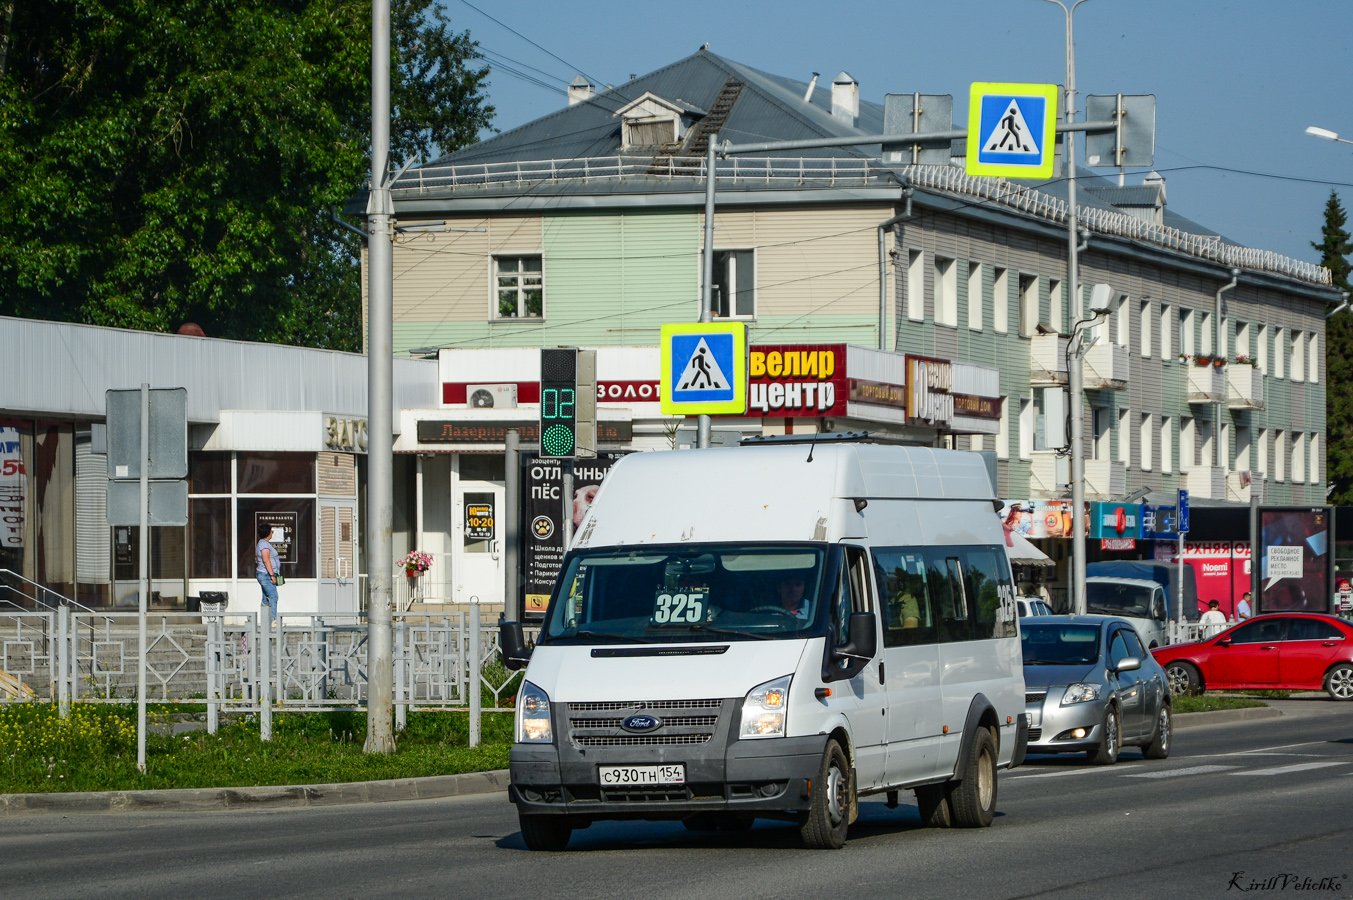 Novosibirsk region, Avtodom (Ford Transit) # С 930 ТН 154